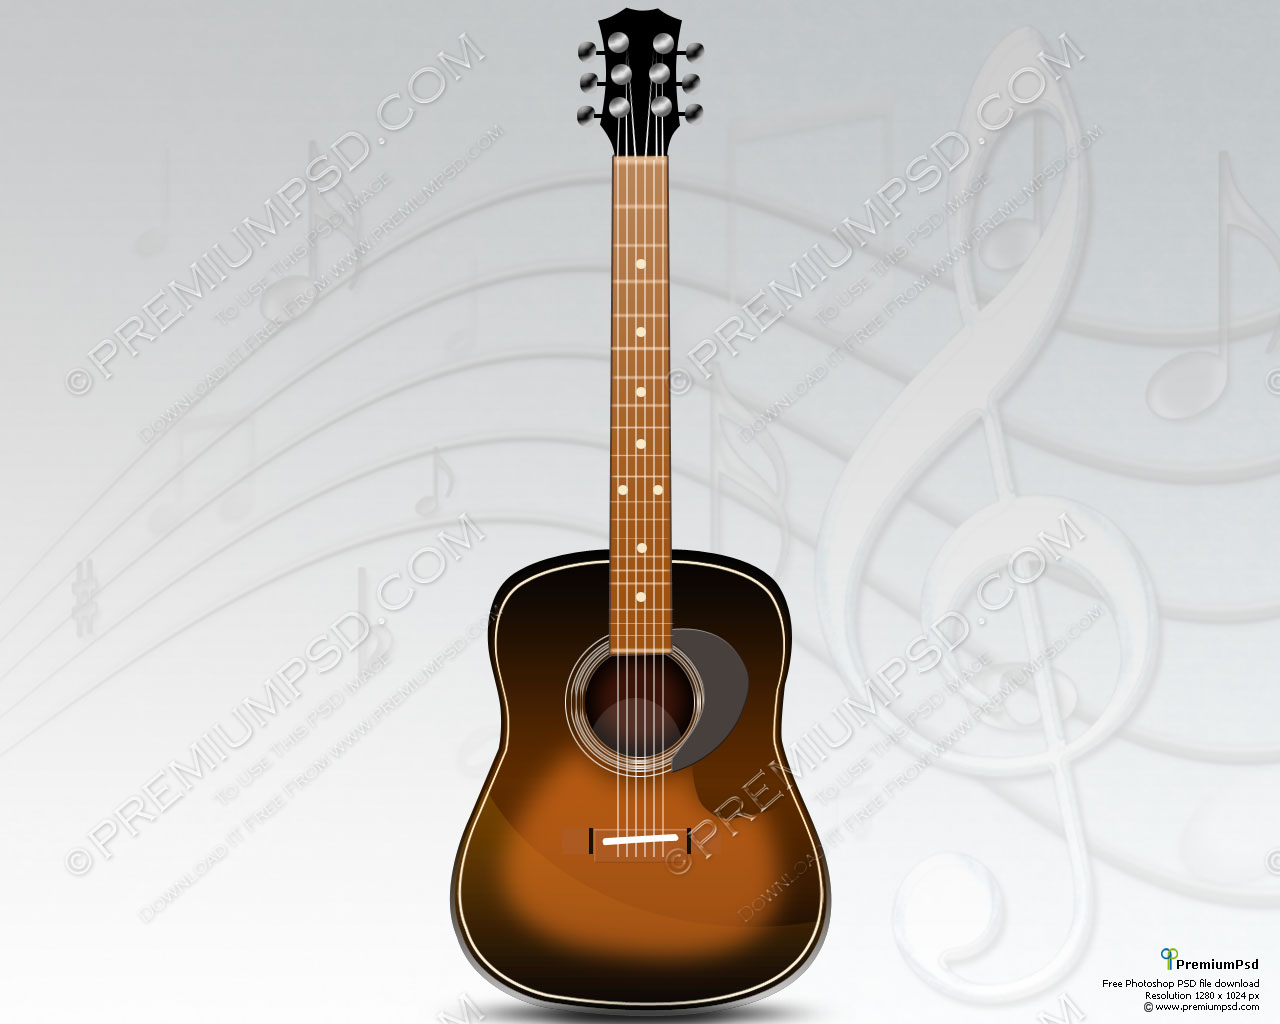 Acoustic Guitar Wallpaper High Resolution - WallpaperSafari1280 x 1024